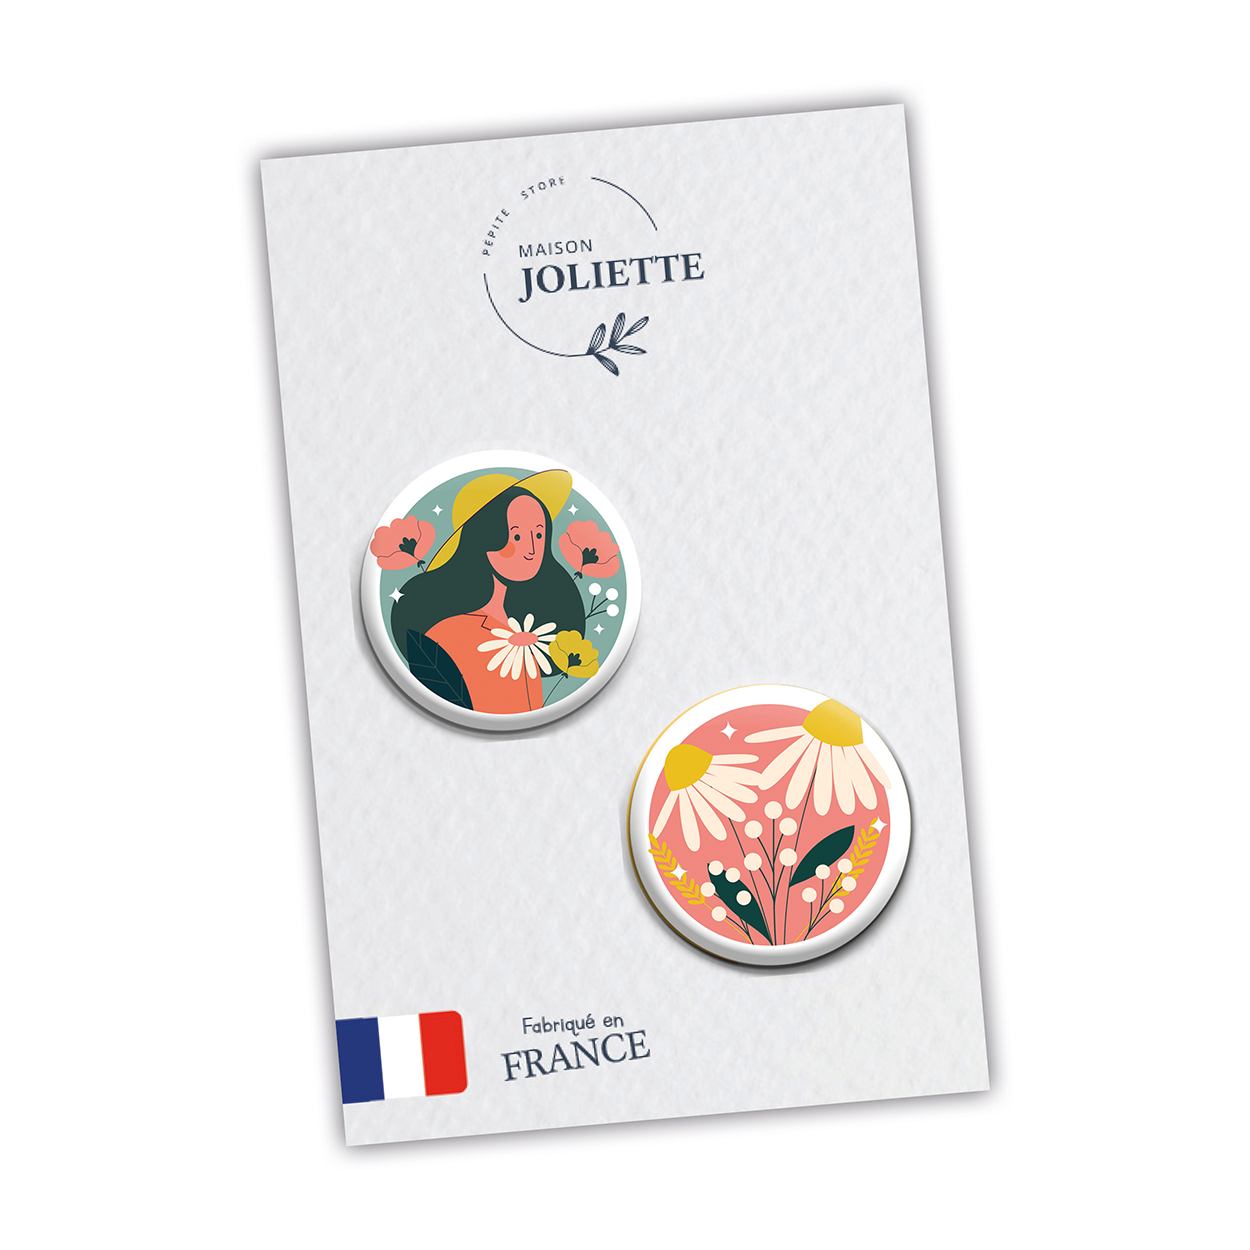 Au jardin - Femme fond bleu + Pâquerettes fond rose - Lot de 2 badges #109